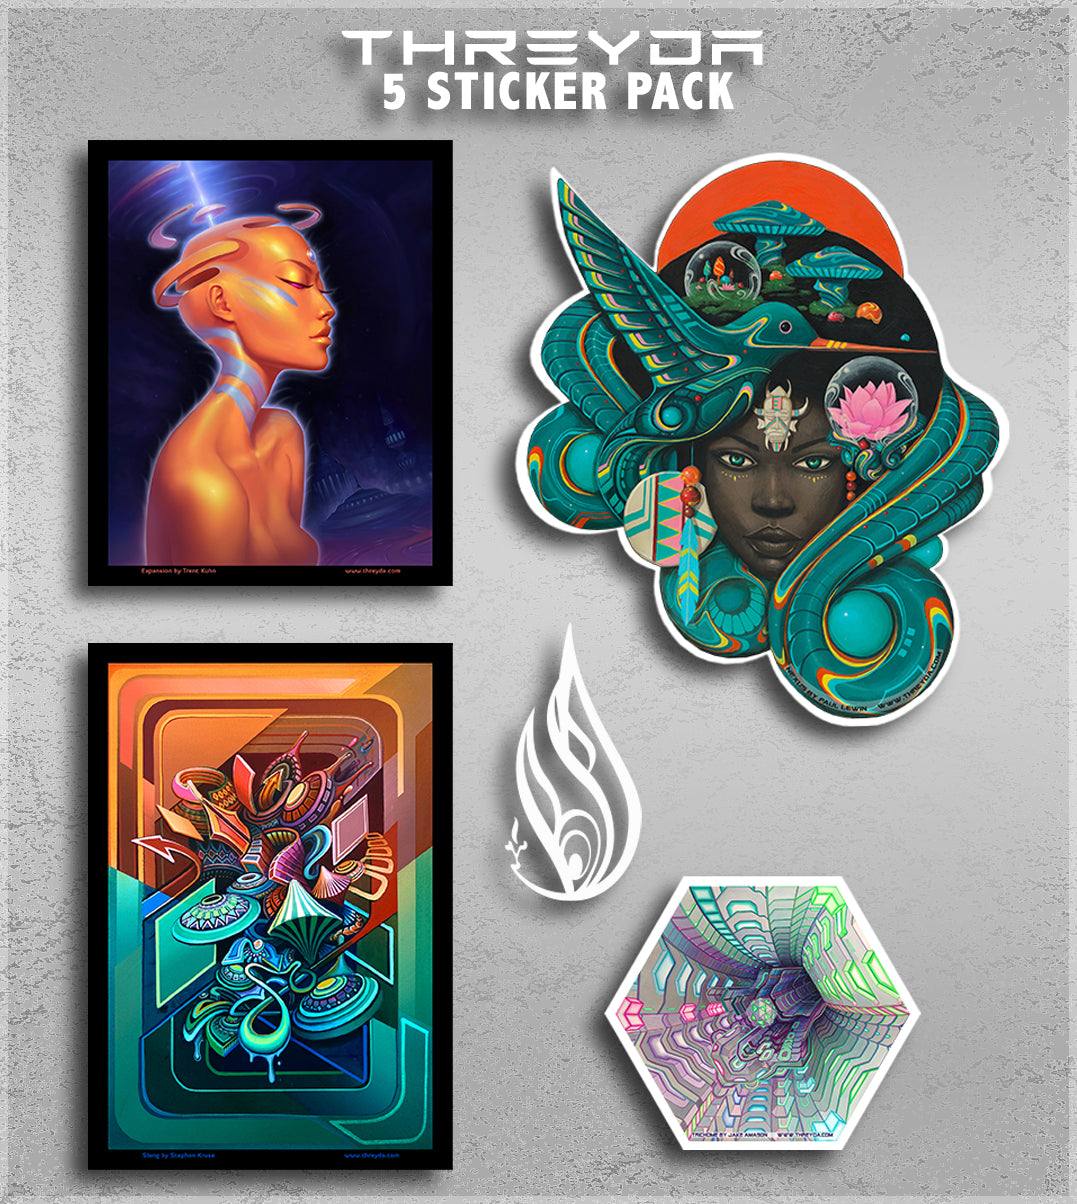 Sticker Pack by Threyda - 5 Pack